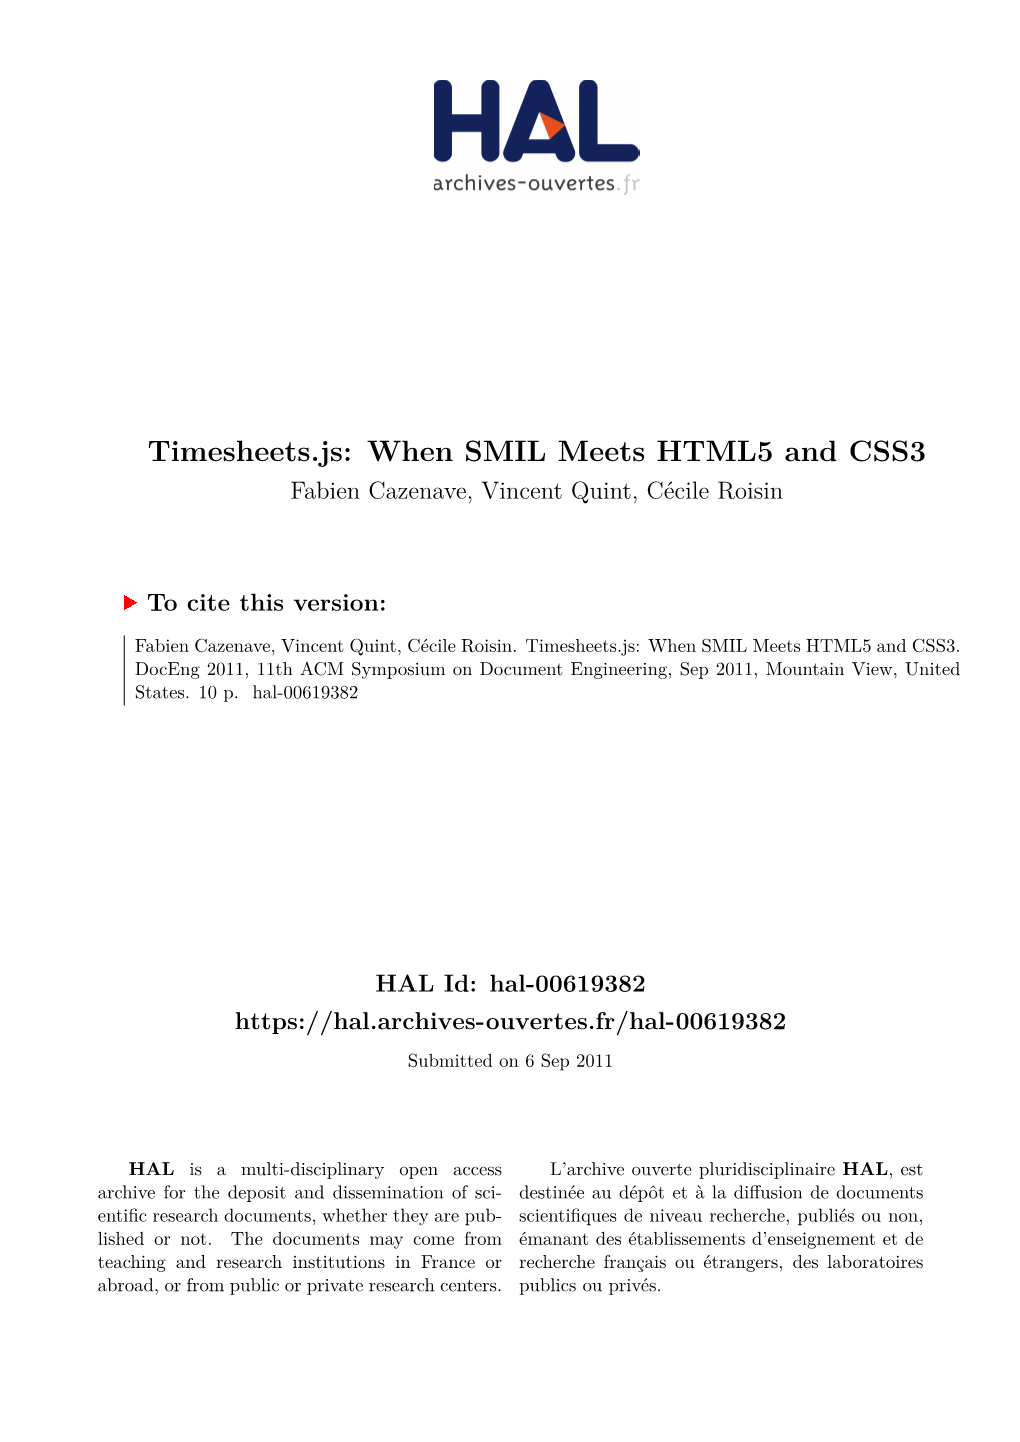 Timesheets.Js: When SMIL Meets HTML5 and CSS3 Fabien Cazenave, Vincent Quint, Cécile Roisin